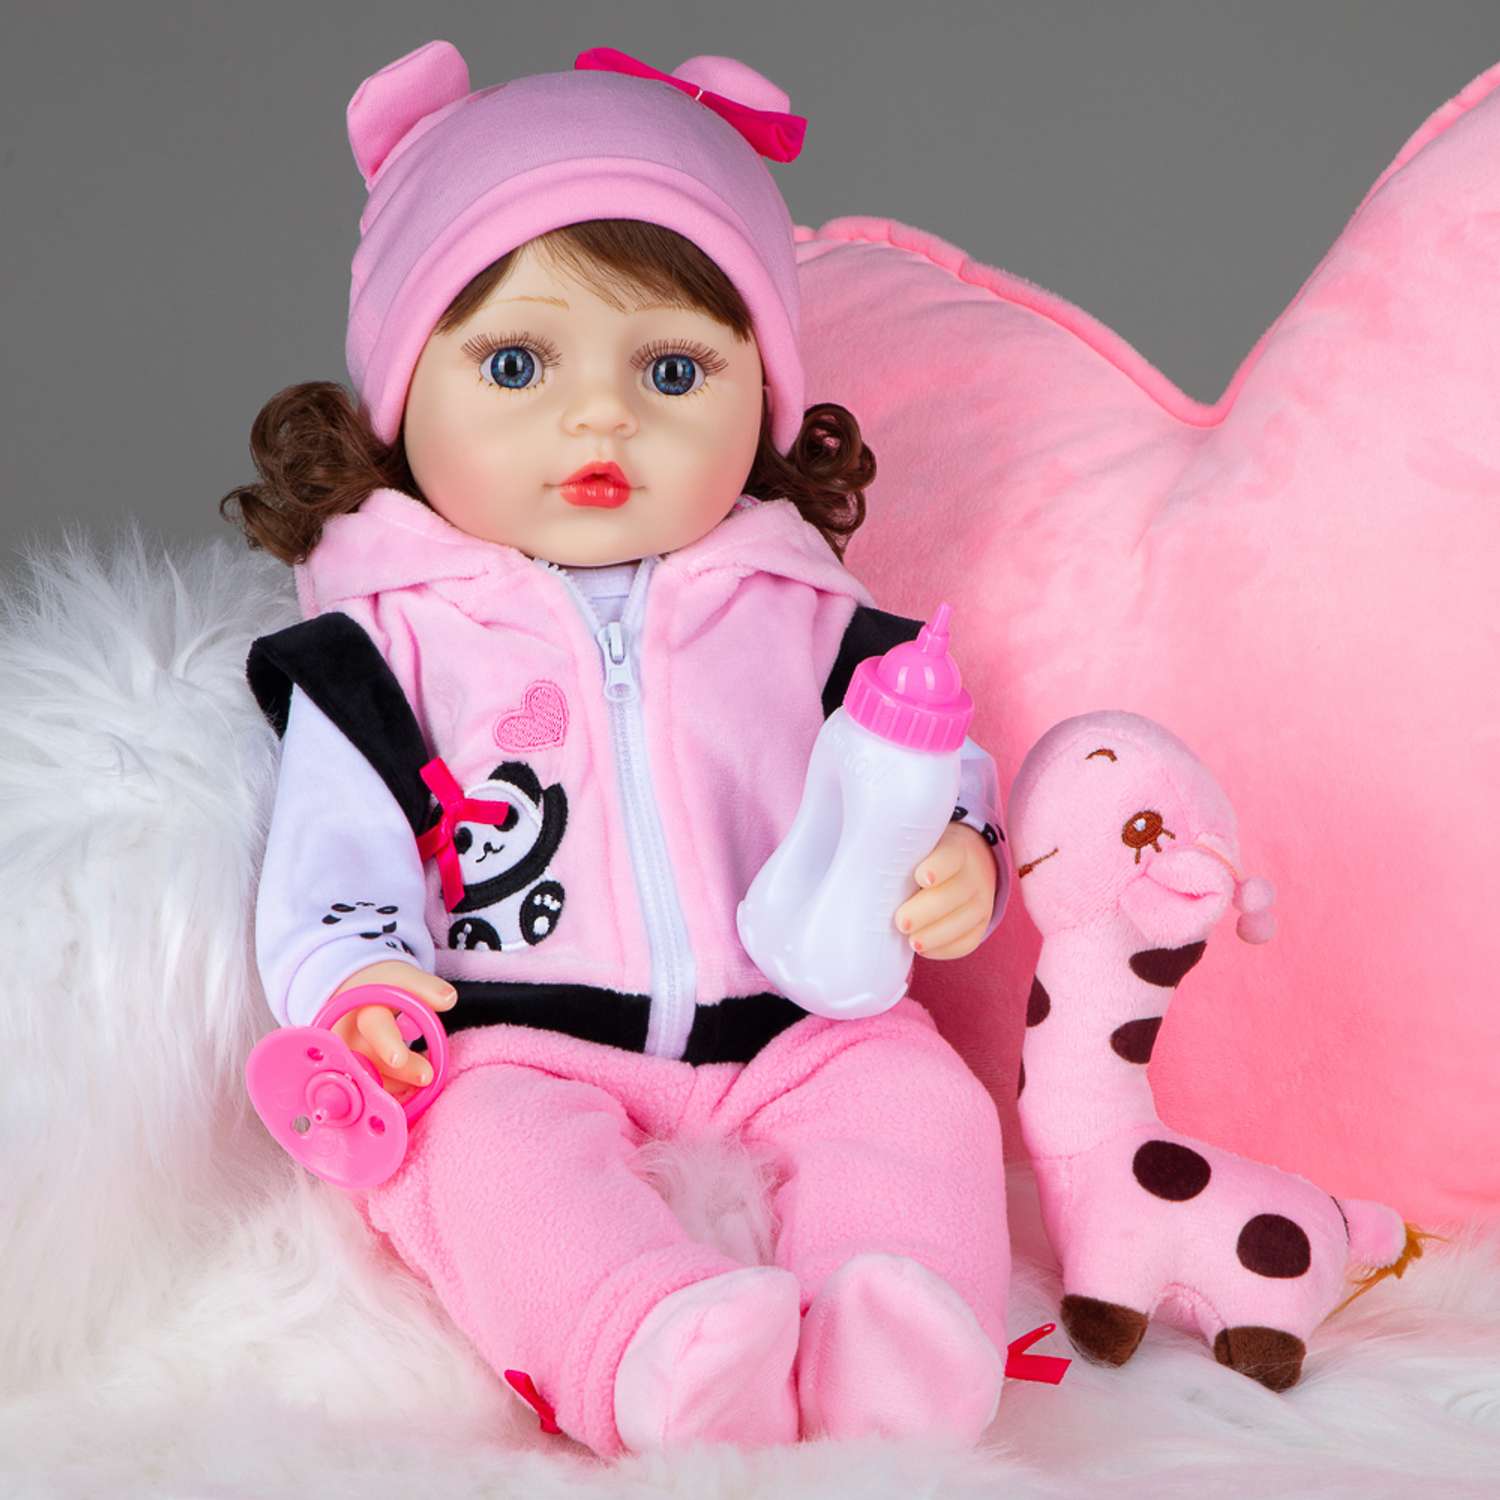 Кукла реборн силиконовая большая RebornFamily купить в интернет-магазине Wildberries